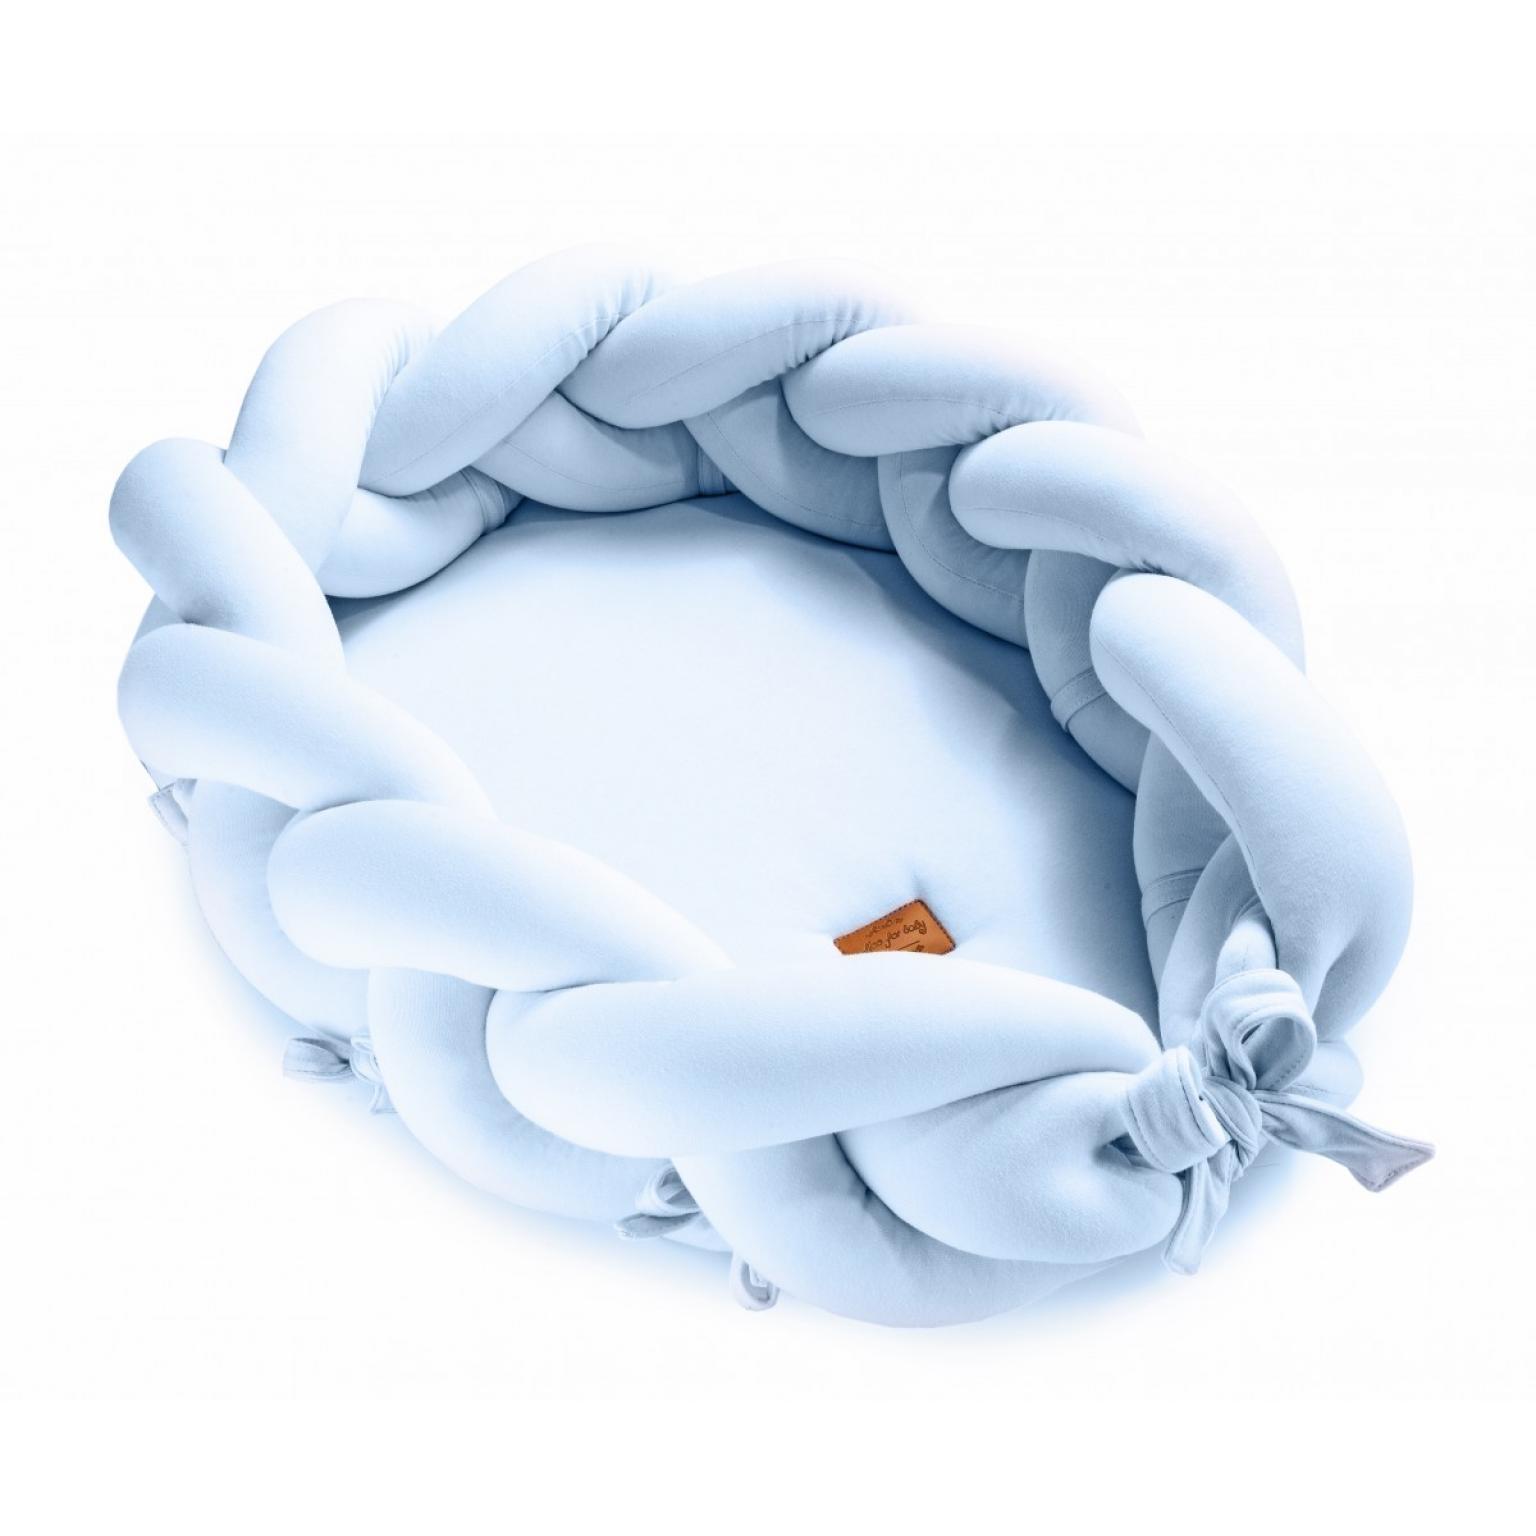 pīta-Ligzdiņa–kokons-3n1-jaundzimušajiem-Flooforbaby-blue-Кокон-гнездышко